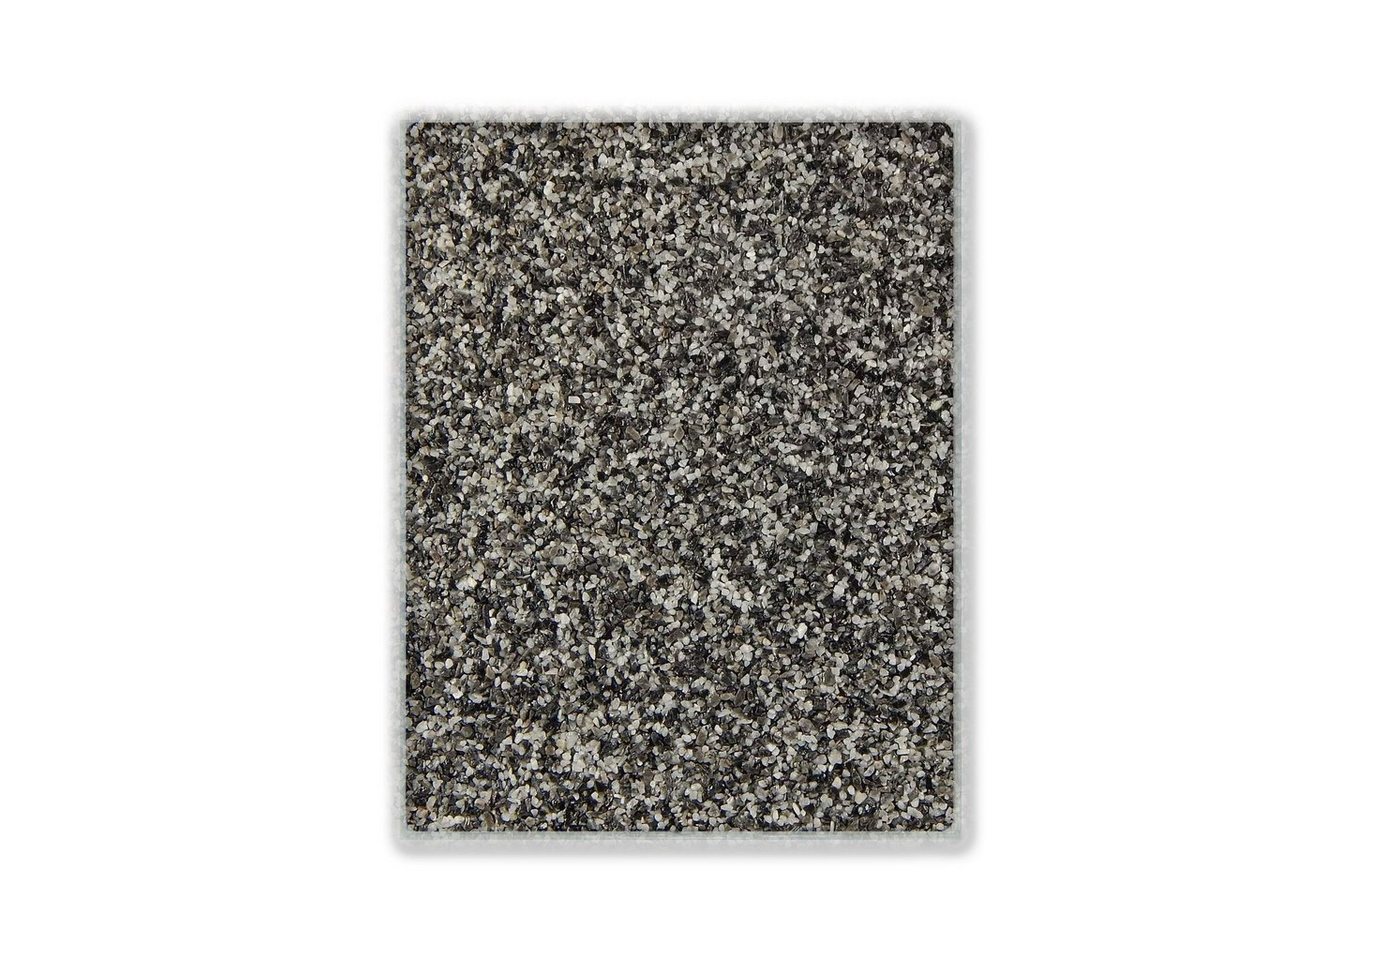 Terralith® Designboden Farbmuster Kompaktboden -contrasto due-, Originalware aus der Charge, die wir in diesem Moment im Abverkauf haben. von Terralith®